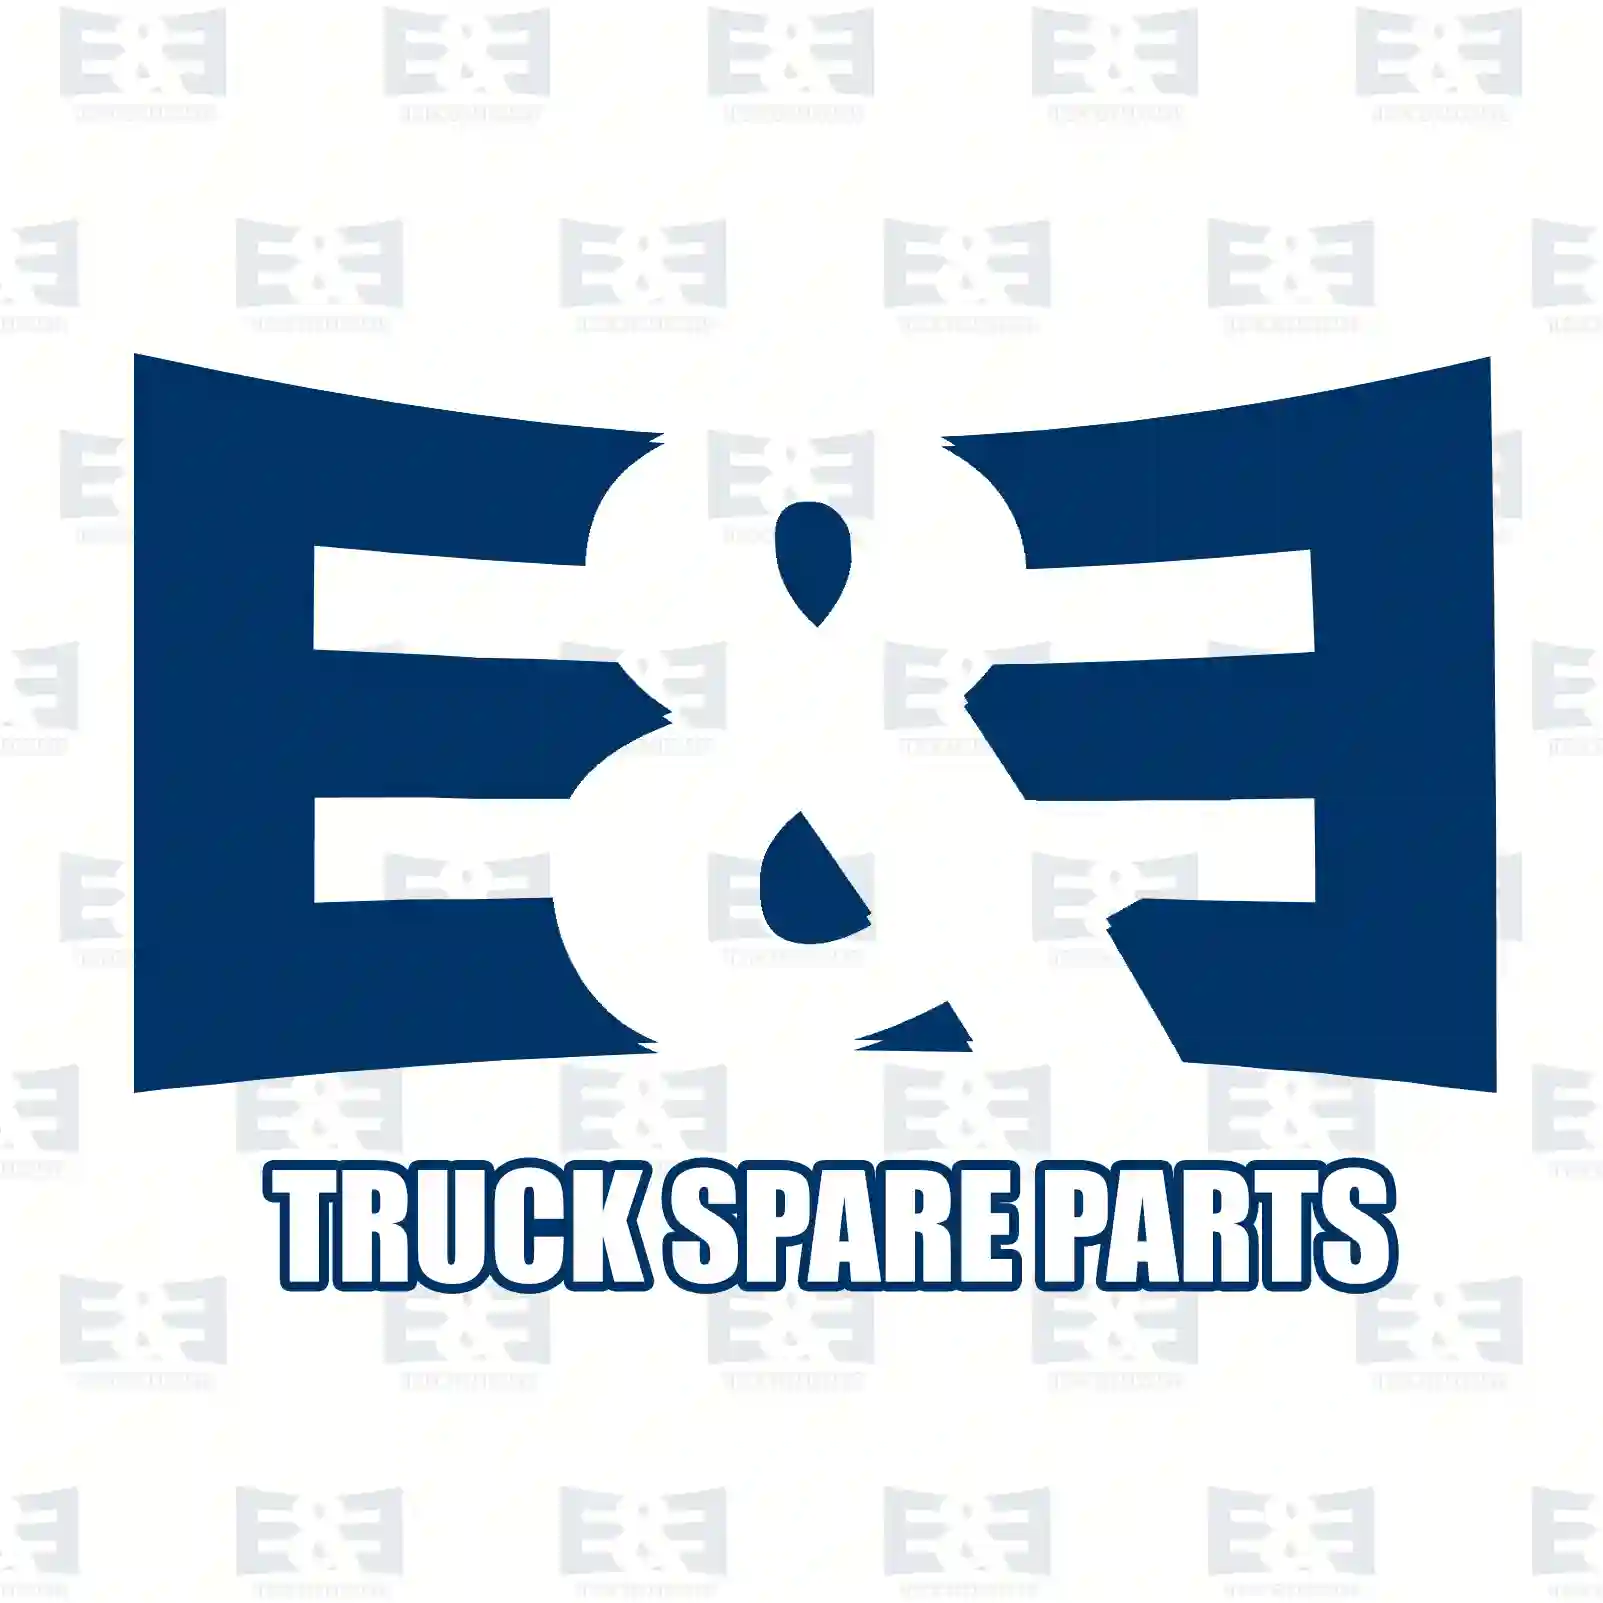 Brake caliper, reman. / without old core, 2E2296066, 504222950, 5001863243, 5001863243, 5006172476, 5010556273, 68033190, 68033252, LRG712, MXC9309015 ||  2E2296066 E&E Truck Spare Parts | Truck Spare Parts, Auotomotive Spare Parts Brake caliper, reman. / without old core, 2E2296066, 504222950, 5001863243, 5001863243, 5006172476, 5010556273, 68033190, 68033252, LRG712, MXC9309015 ||  2E2296066 E&E Truck Spare Parts | Truck Spare Parts, Auotomotive Spare Parts